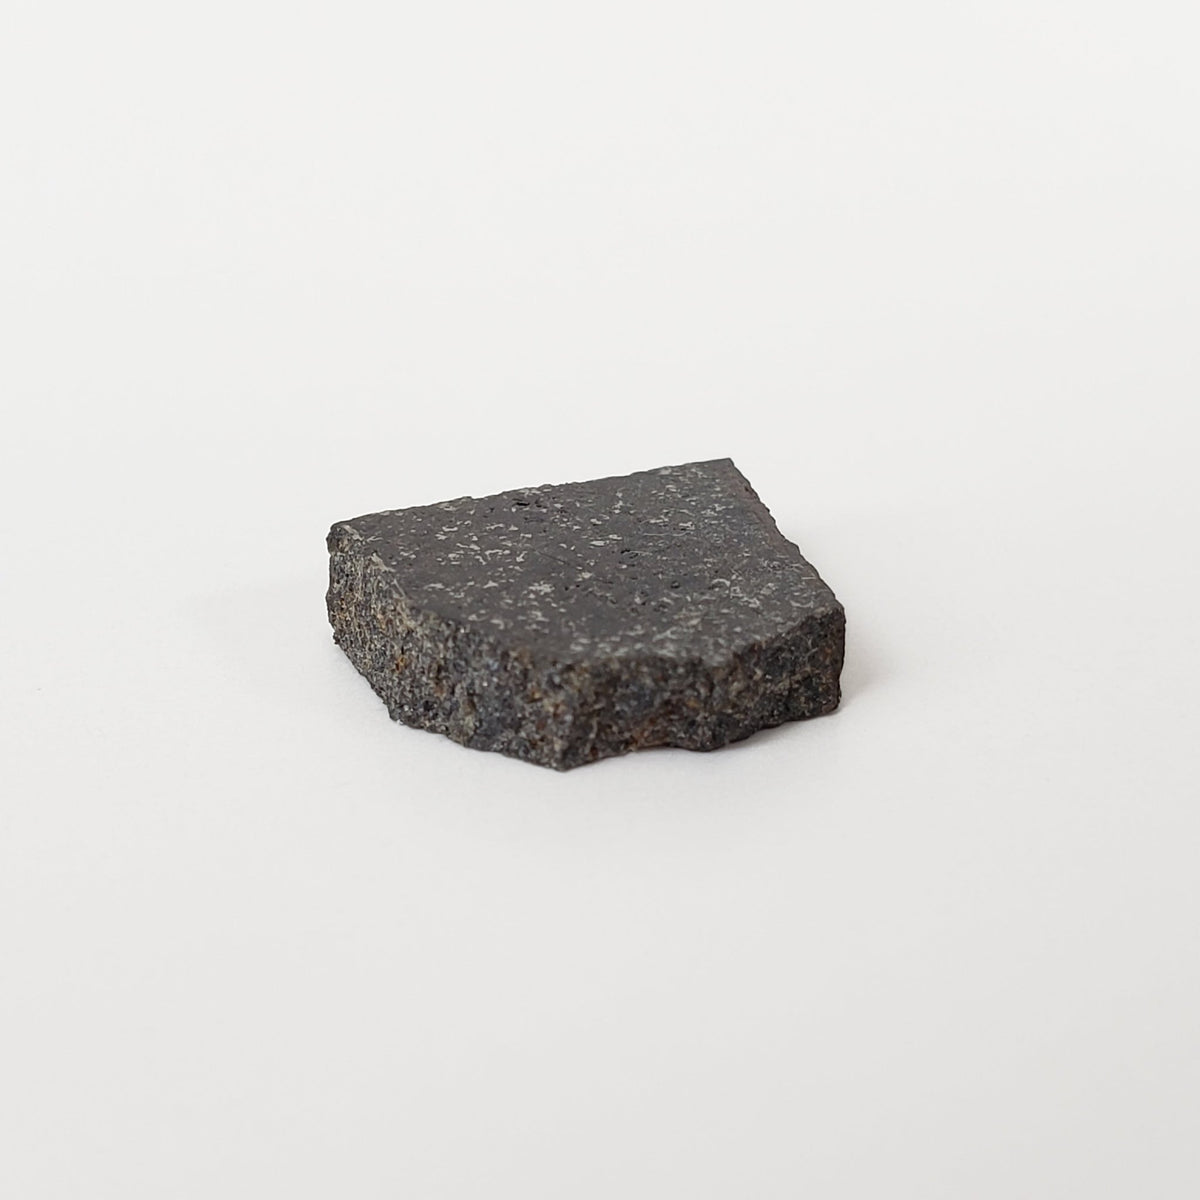 Spade Meteorite | 0.8 Grams | Part Slice | H6 Chondrite | Lamb County, Texas